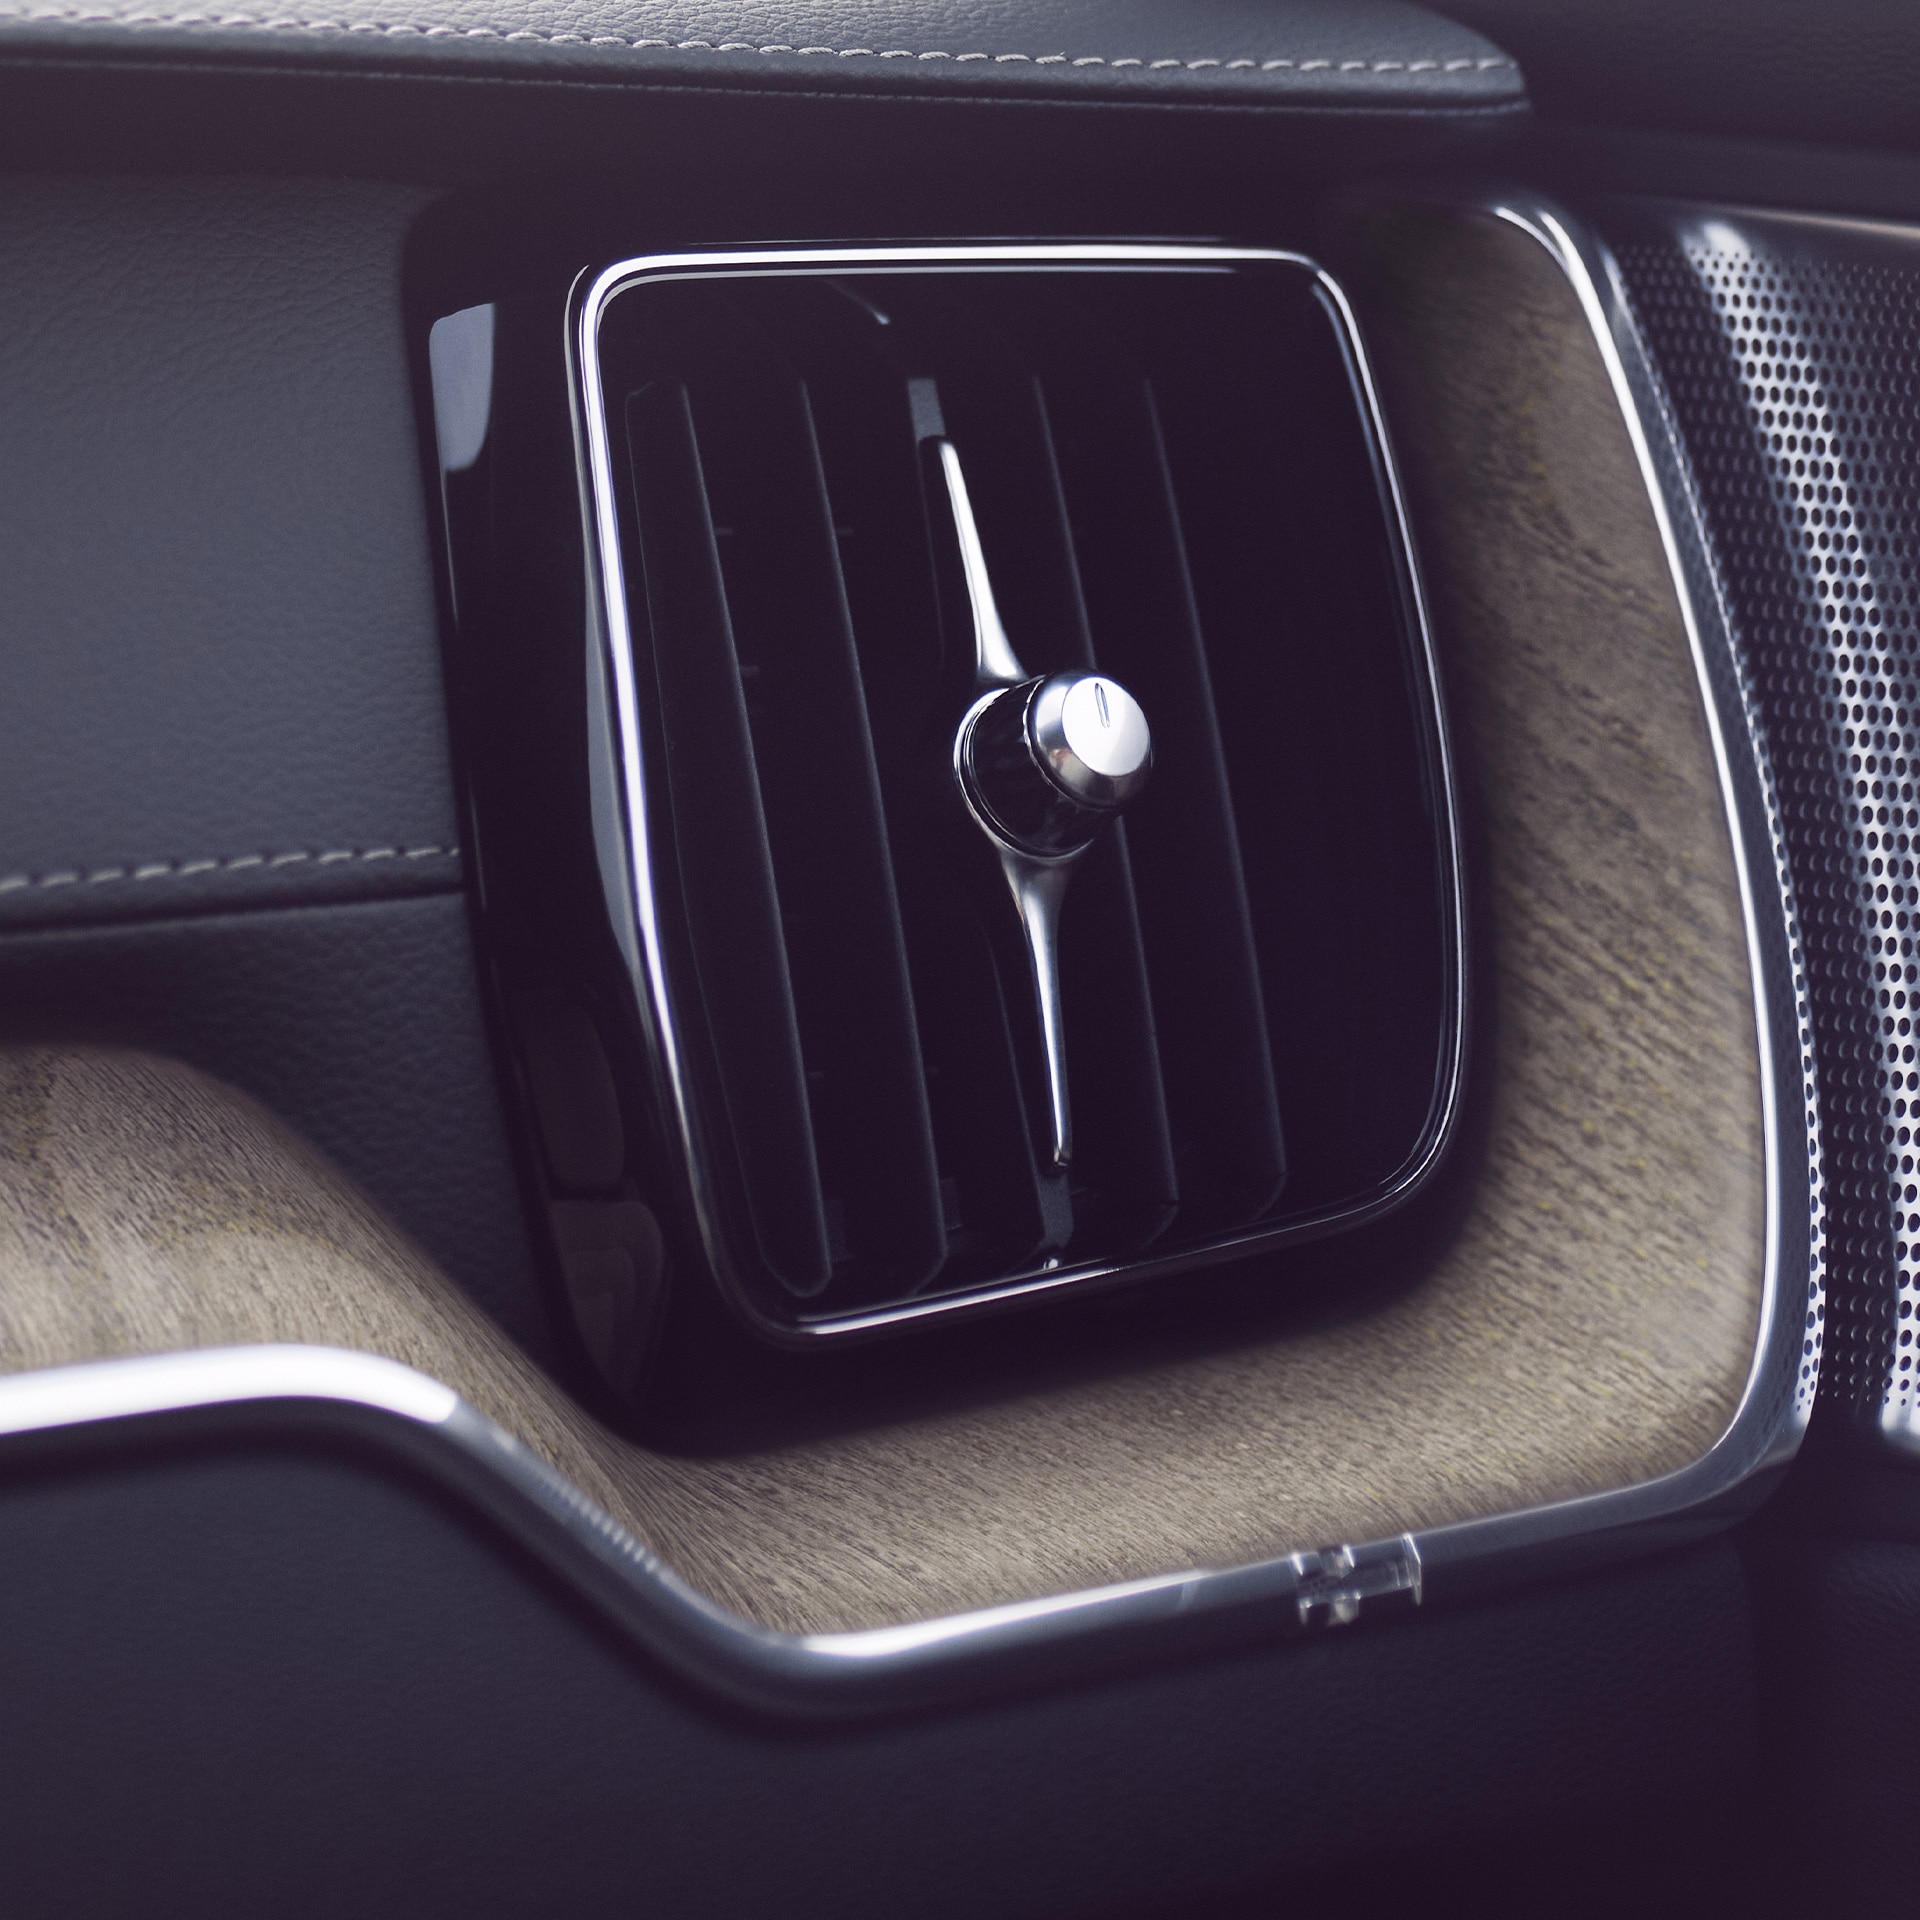 Le purificateur d'air avancé du Volvo XC60 permet à tous les passagers de respirer un air plus sain.